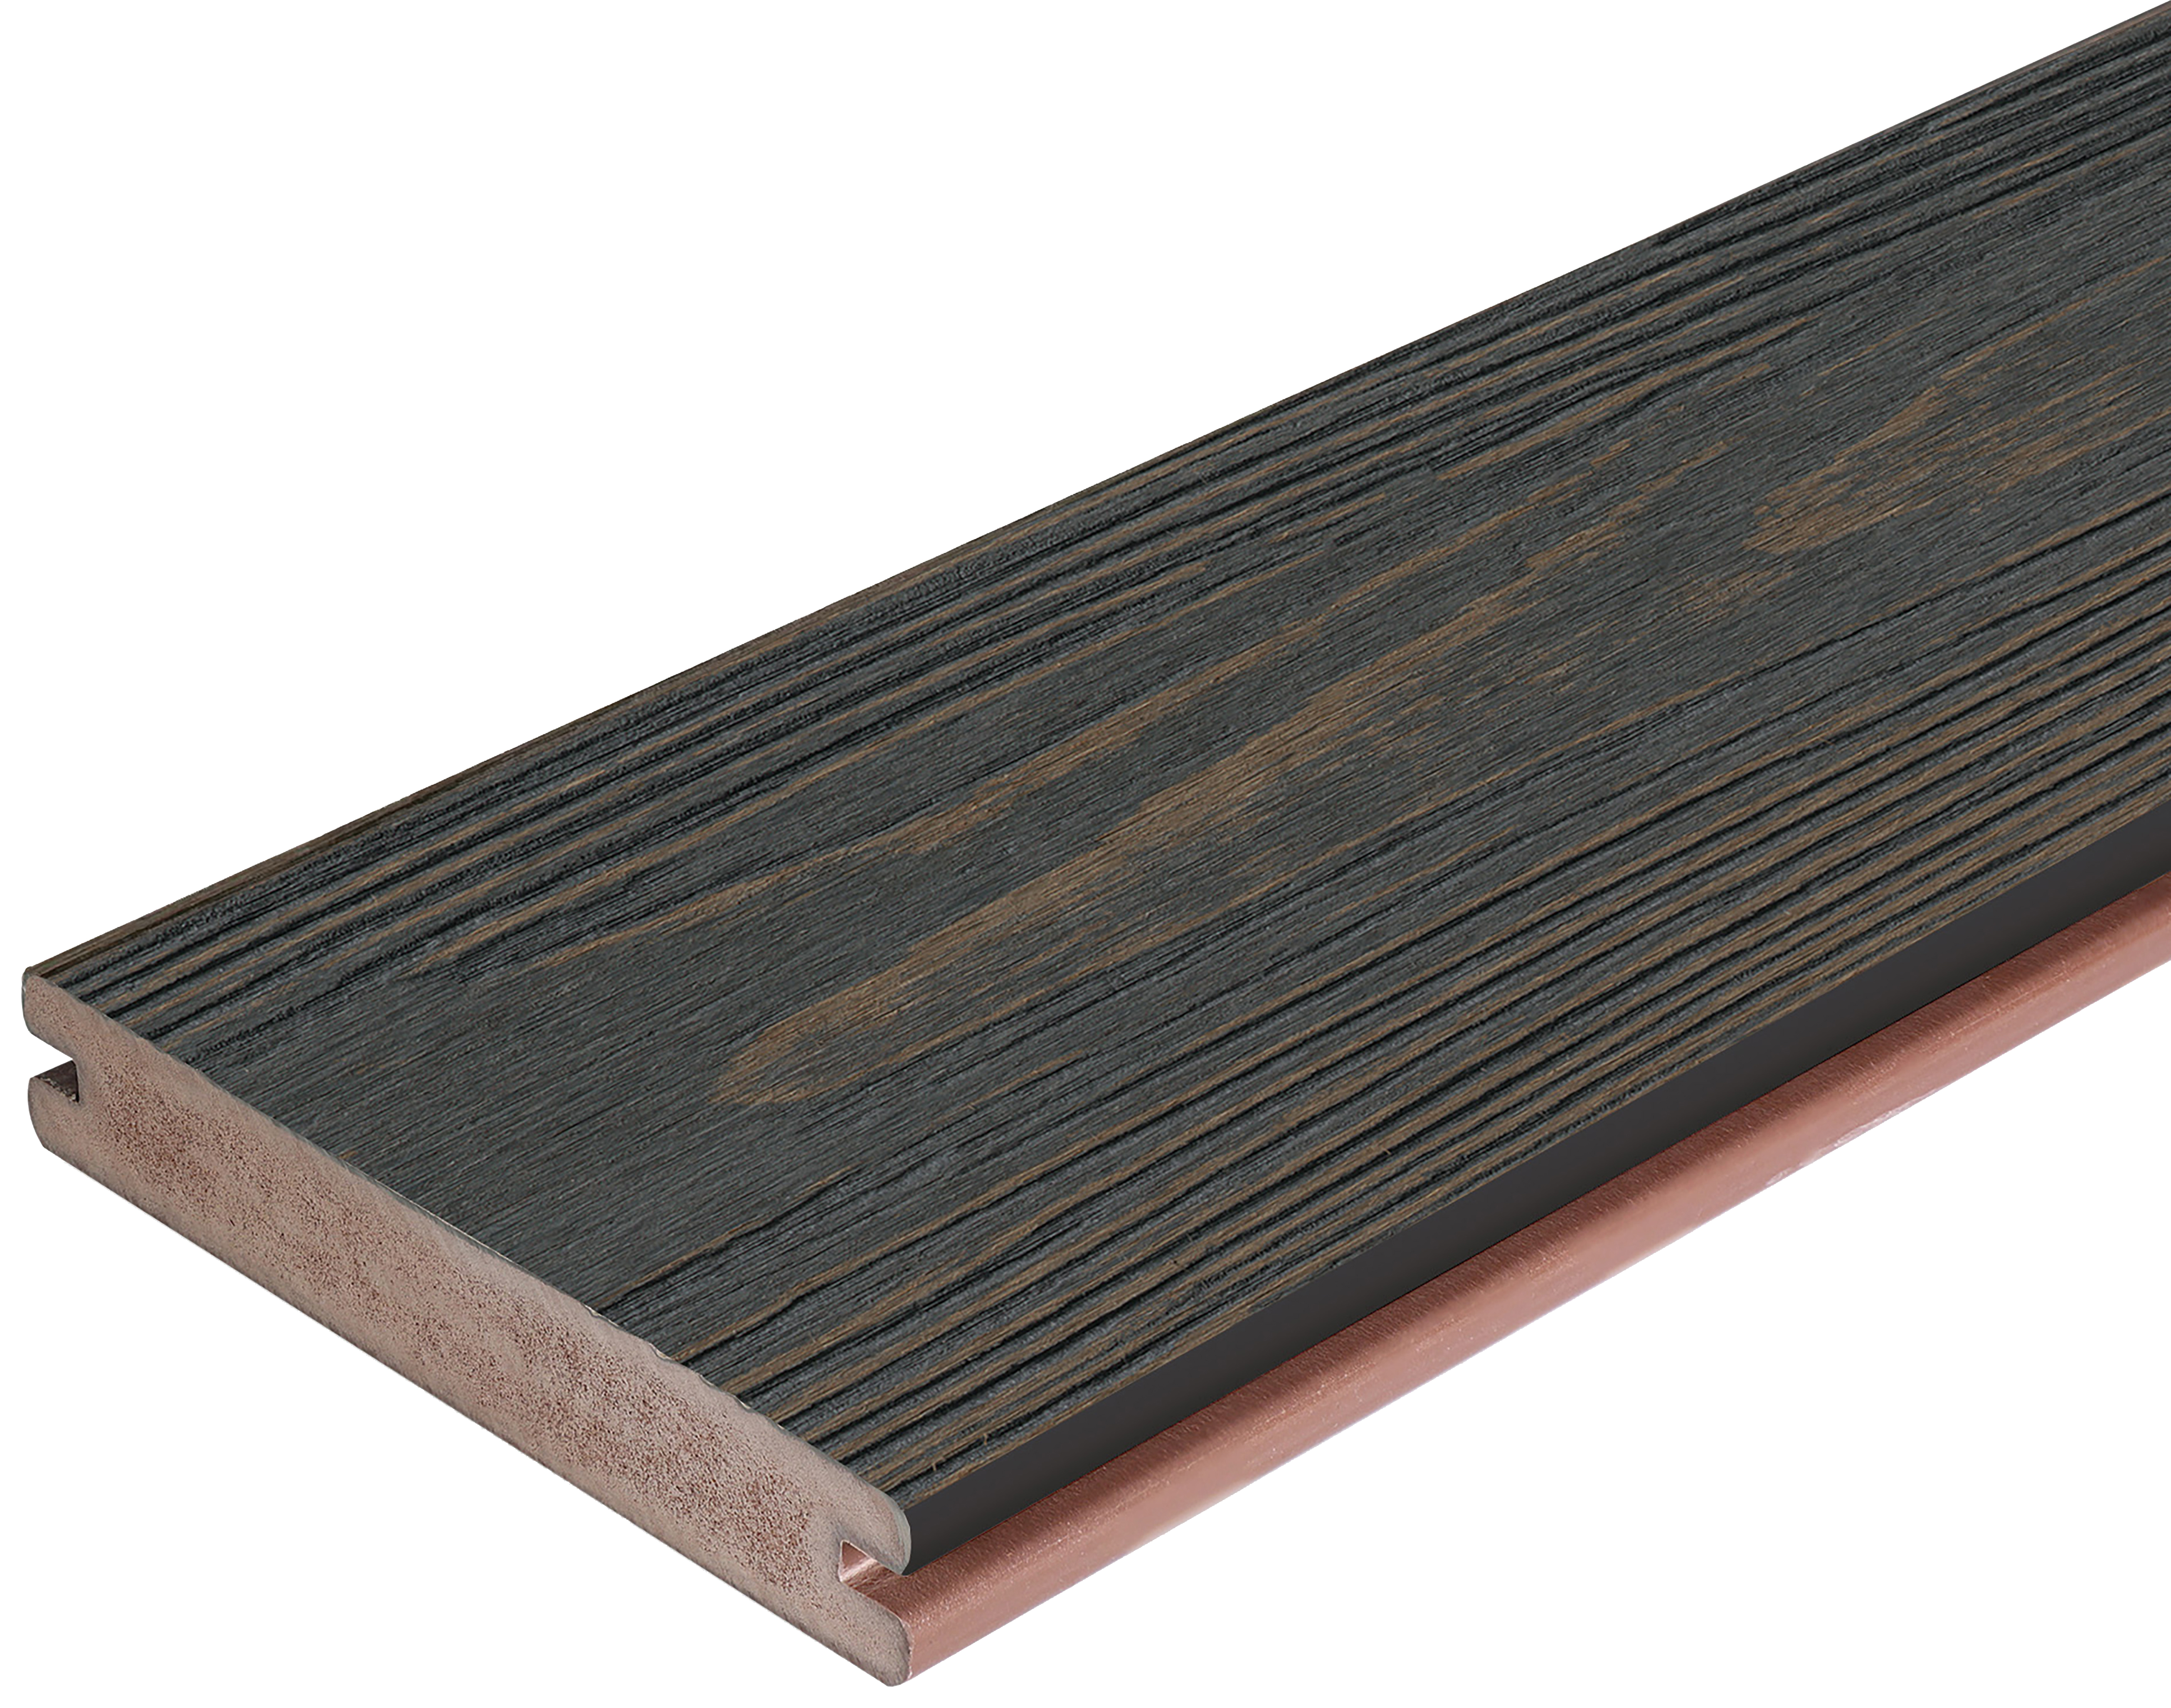 Apex Carbonised Cedar Deckboard - 24 x 140 x 4800mm - Pack of 2